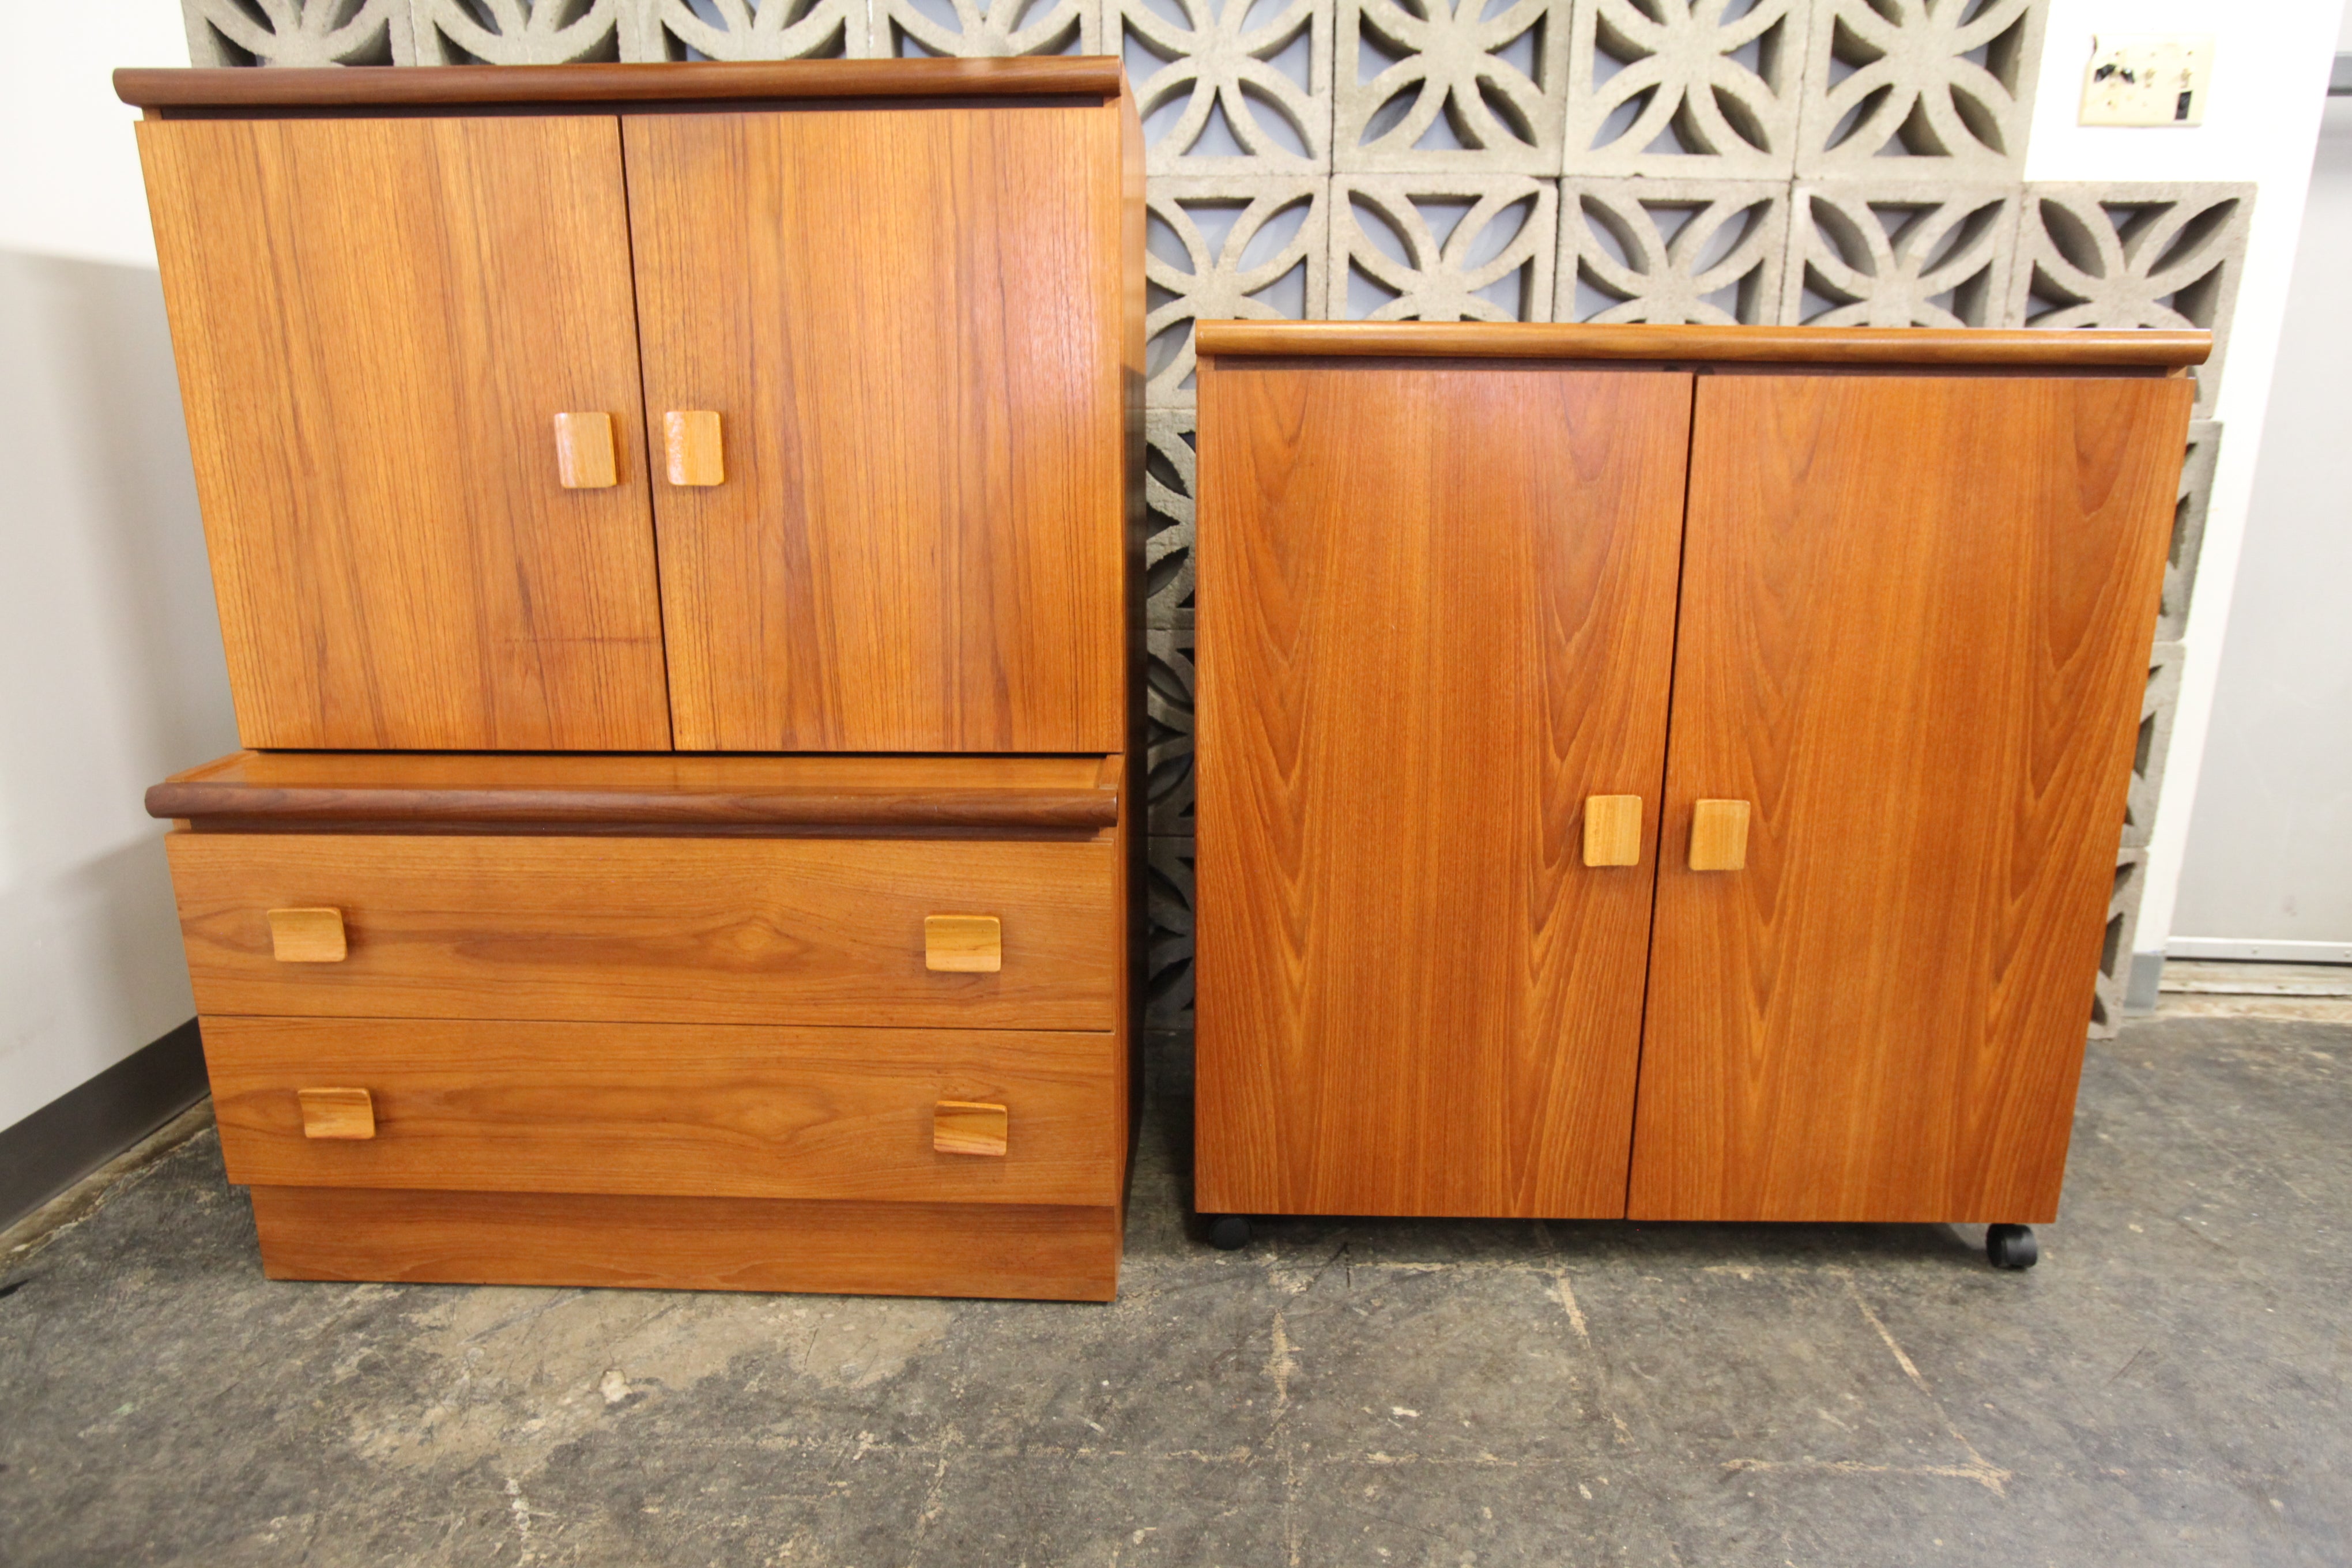 Vintage 2 Door Teak Cabinet by RS Associates on Castors (36"W x 17"D x 38.25"H)